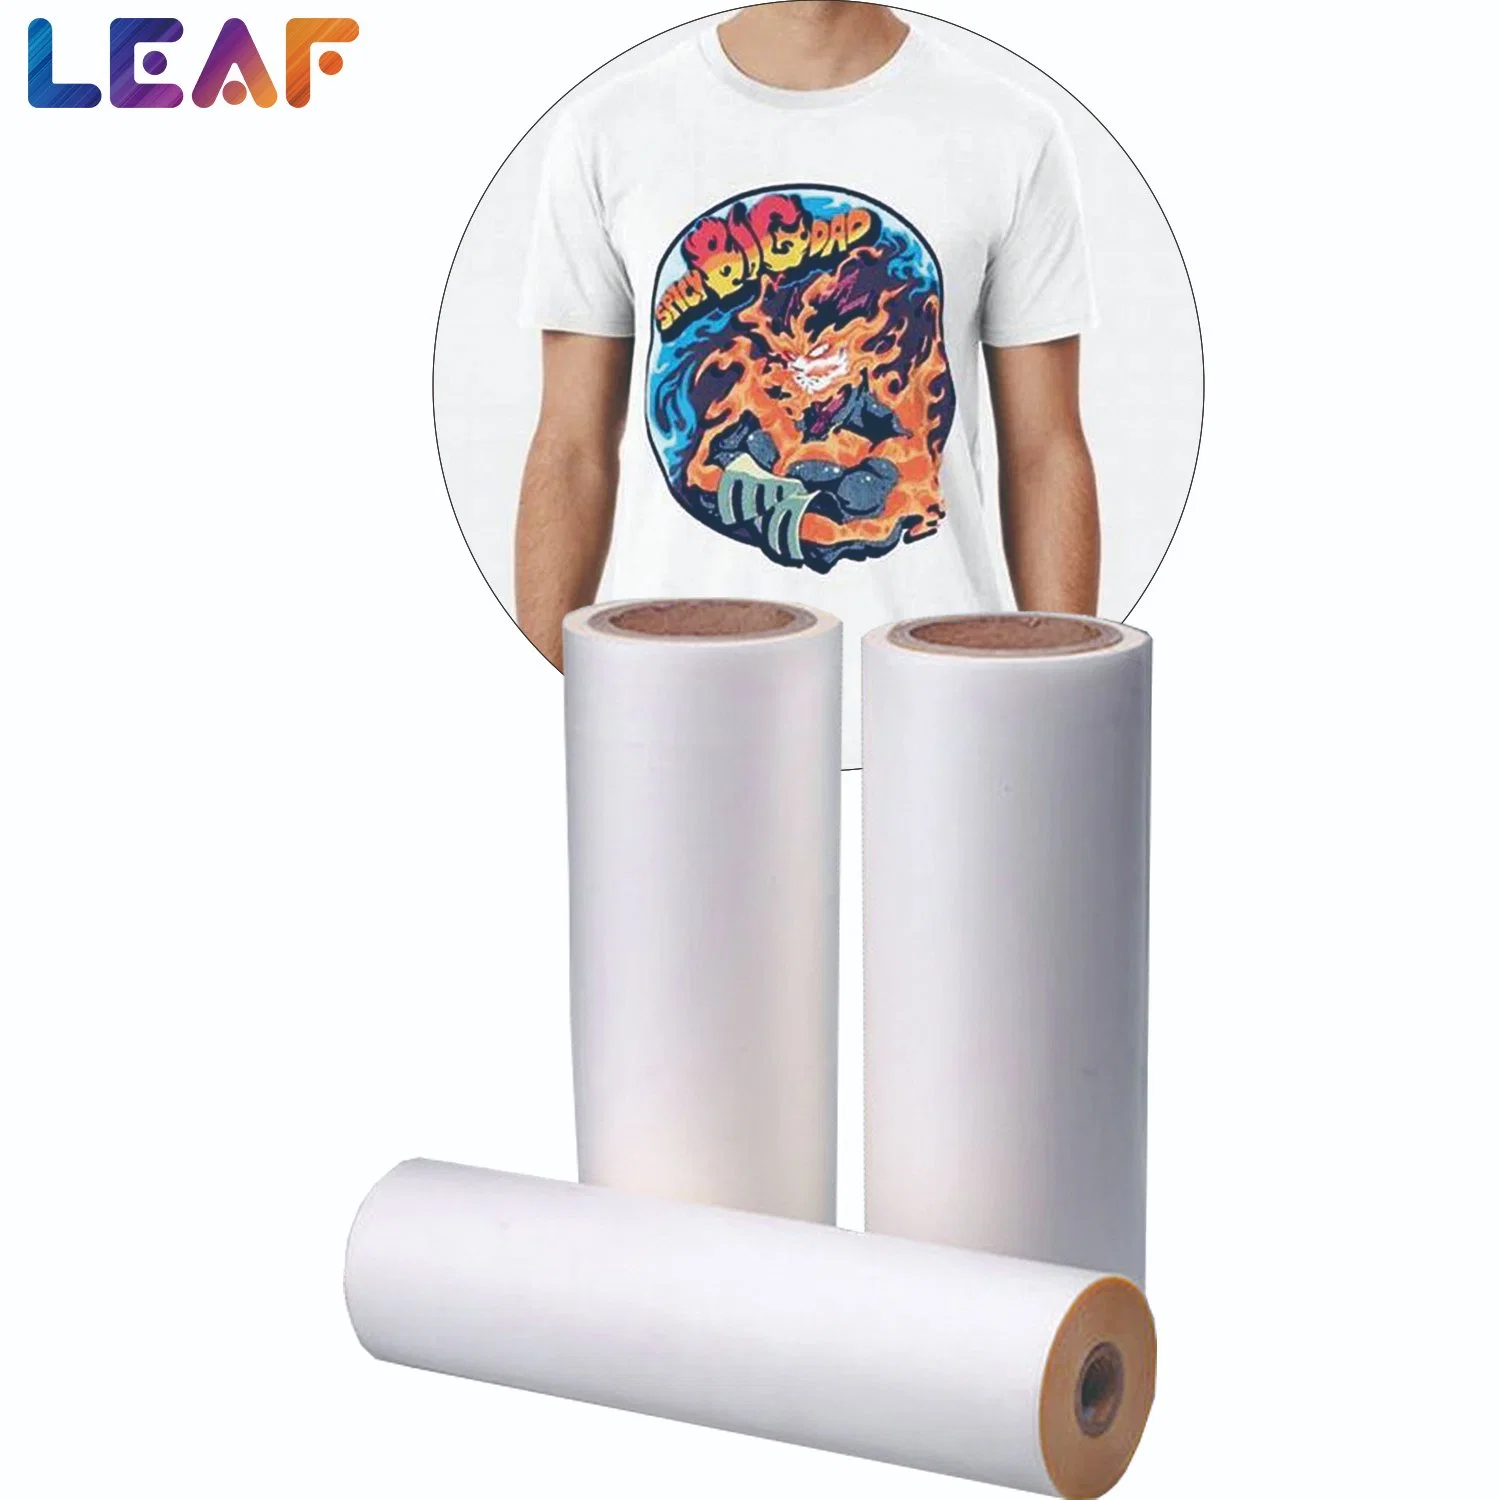 EIN-/doppelseitige Wärmeübertragungsfolie mit Heisspeeling, einseitig, 60cm DTF Pet Film für T-Shirt Druckmaschine